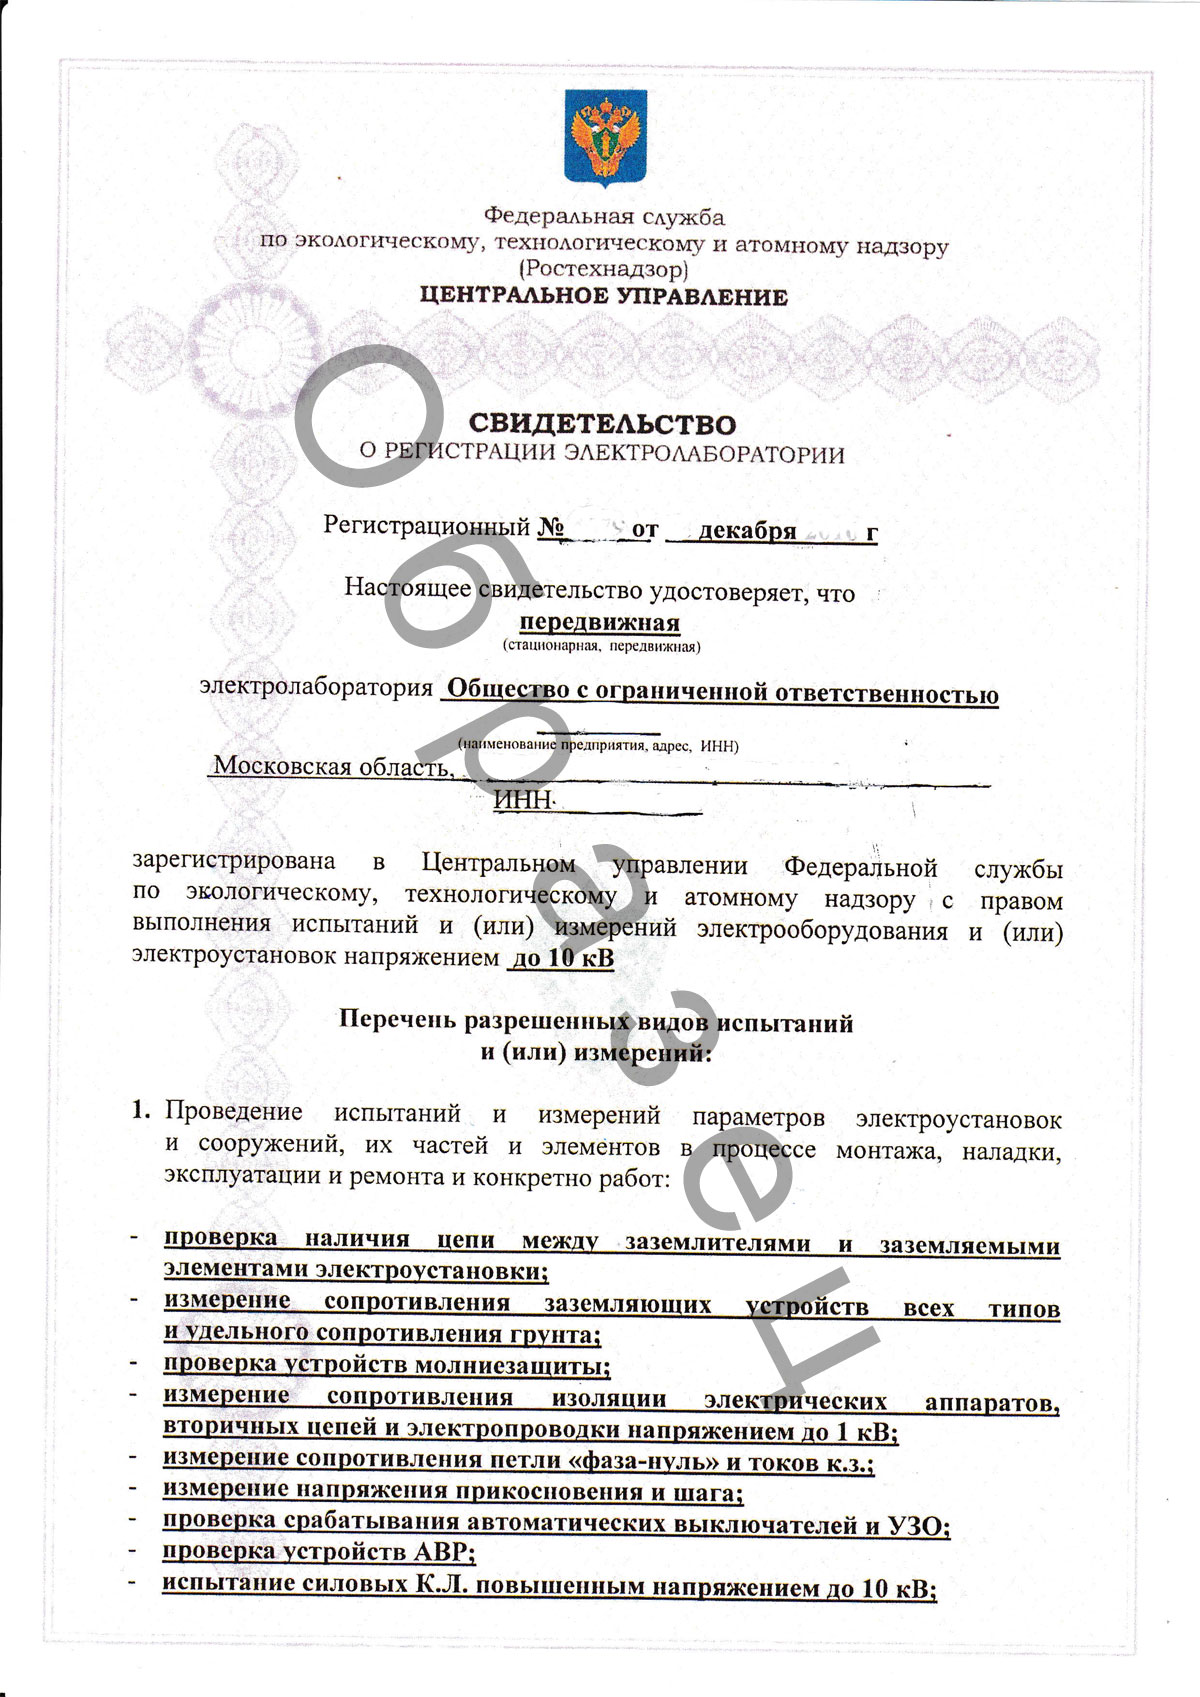 Регистрация Электролаборатории В Ростехнадзоре, Аттестация.